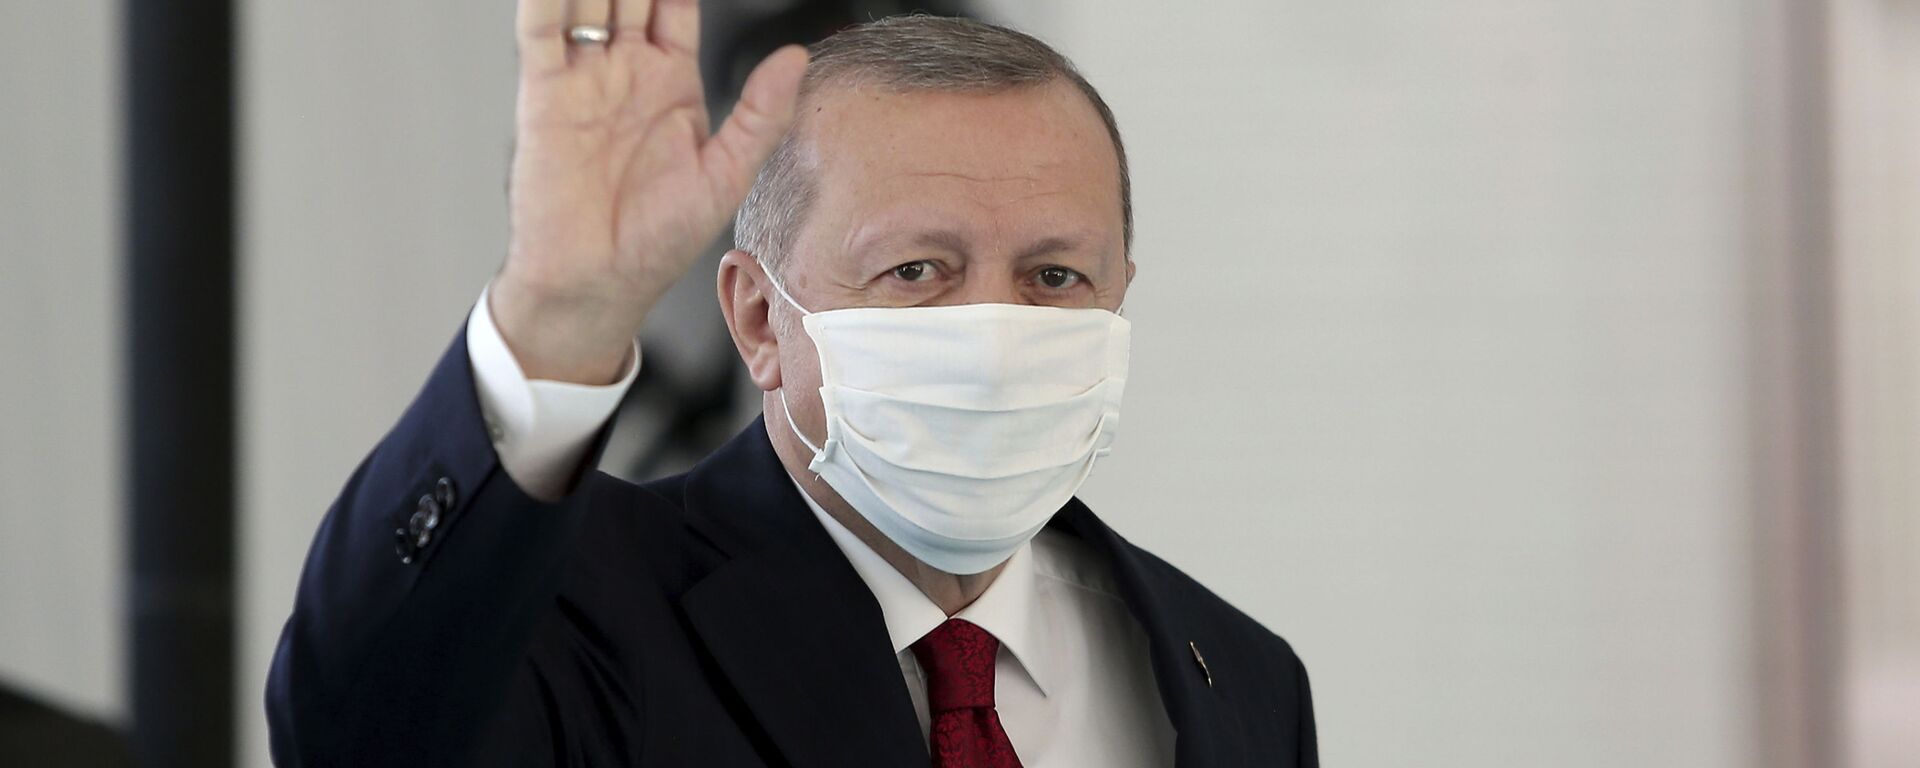 Президент Турции Реджеп Тайип Эрдоган в защитной медицинской маске в одном из госпиталей Стамбула - Sputnik Казахстан, 1920, 11.01.2021